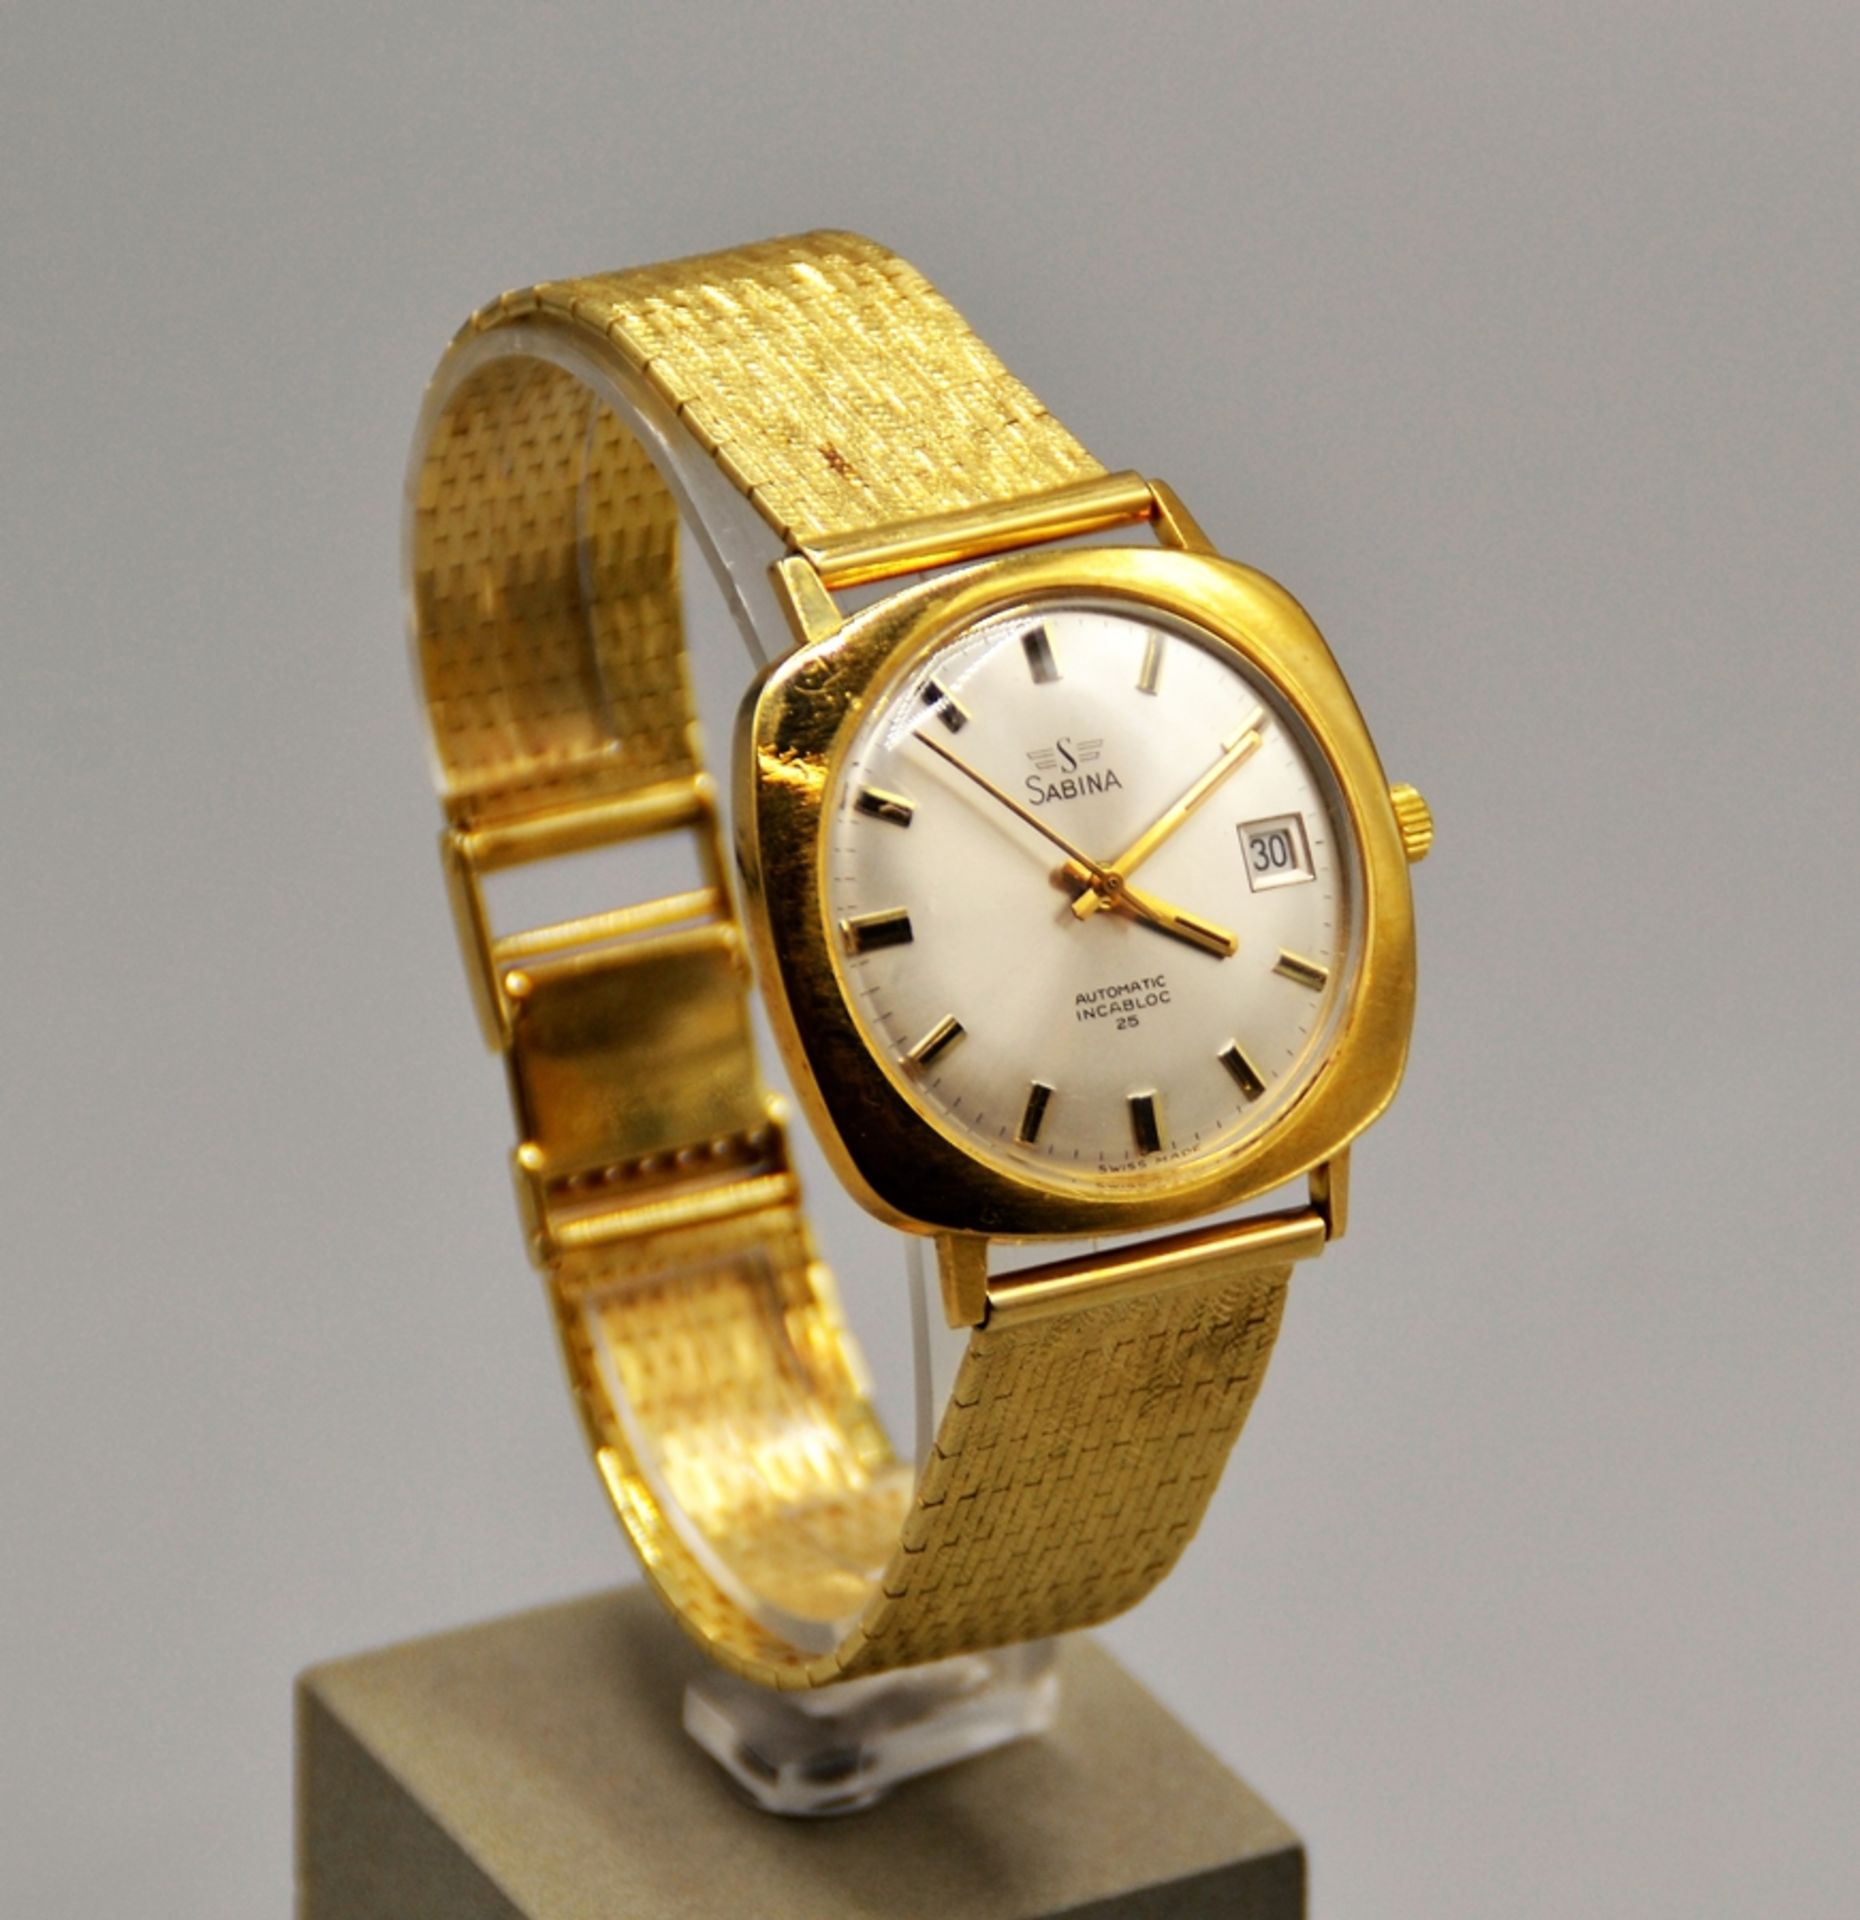 Sabina Automatic Herrenuhr Incabloc 25 Gold 750, das Uhrengehäuse besteht aus 750 Gold, das Armband